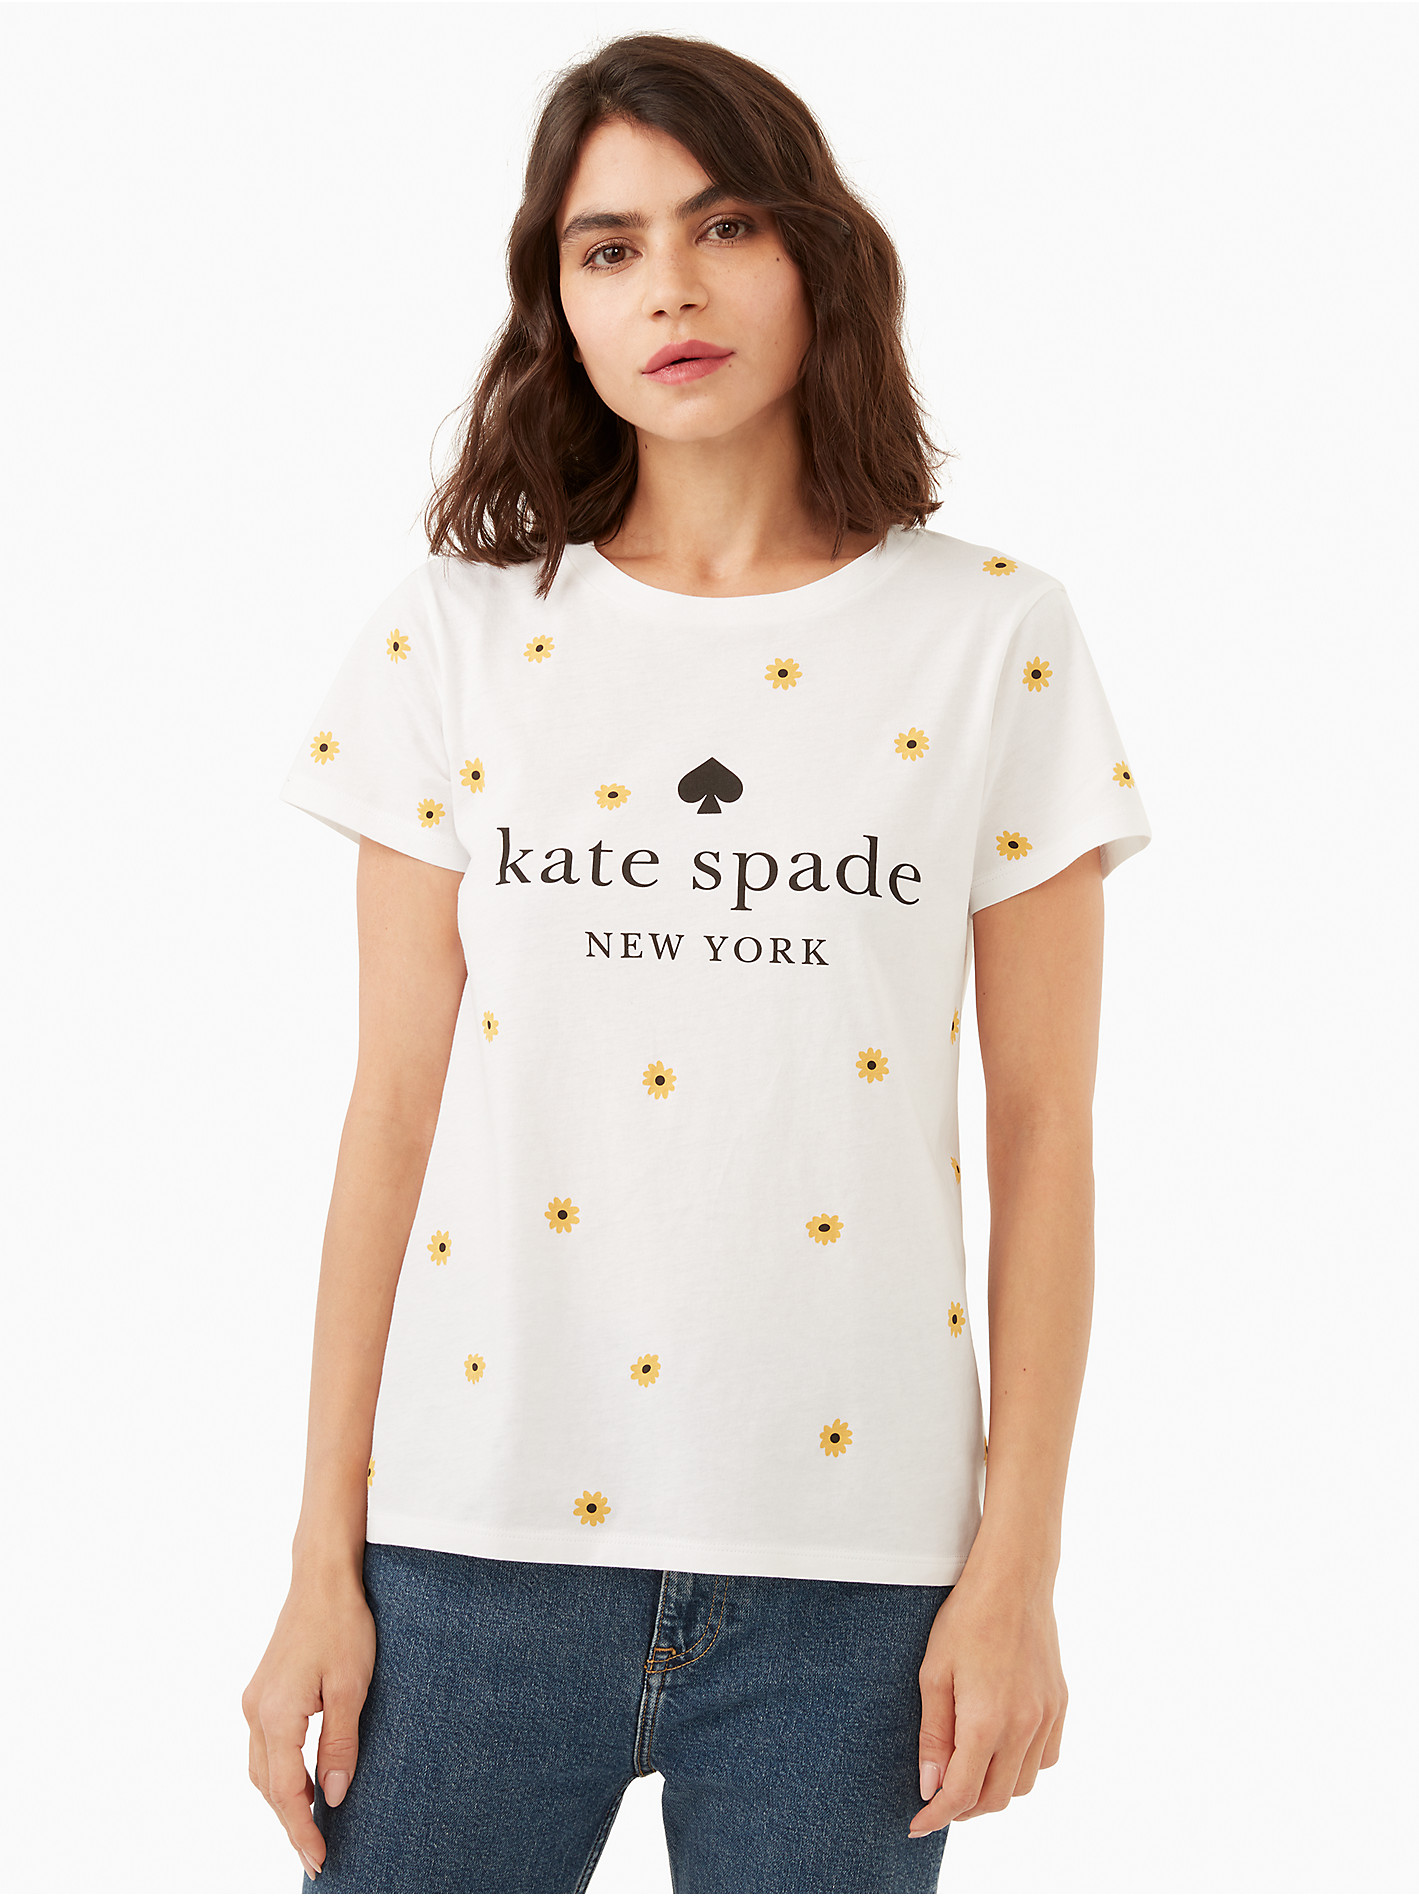 レビュー高評価のおせち贈り物 Kate spade ケイトスペード Tシャツ スカート セットアップ